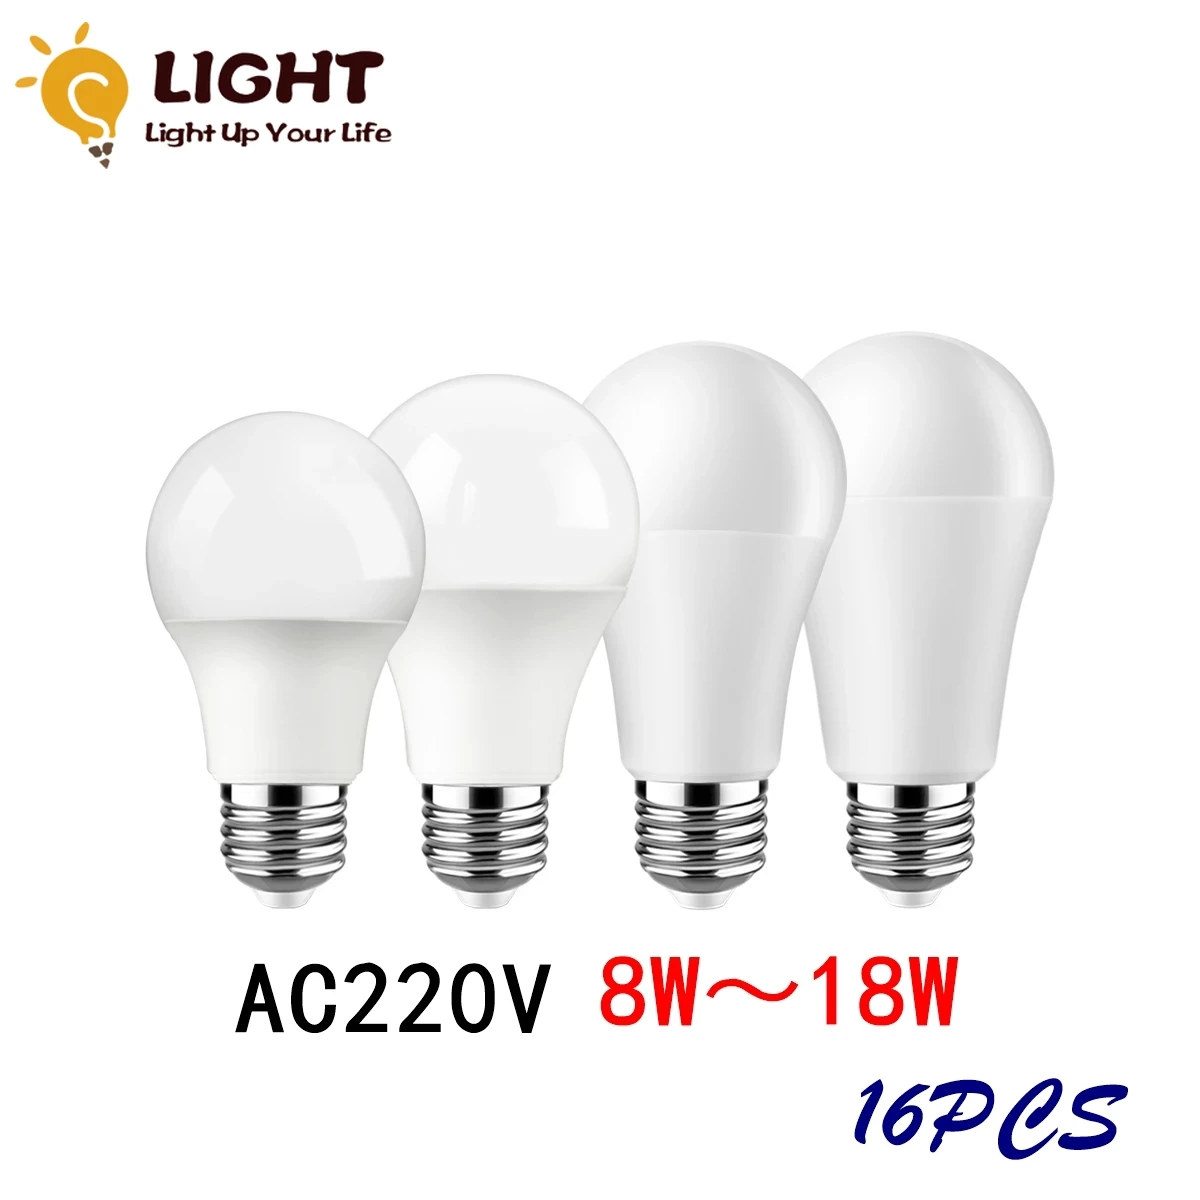 

16PC Led bulb Lamp AC 220V-240V A60 Power 8W-18W B22 E27 bombilla lampara led bulb lighting for living room for Home